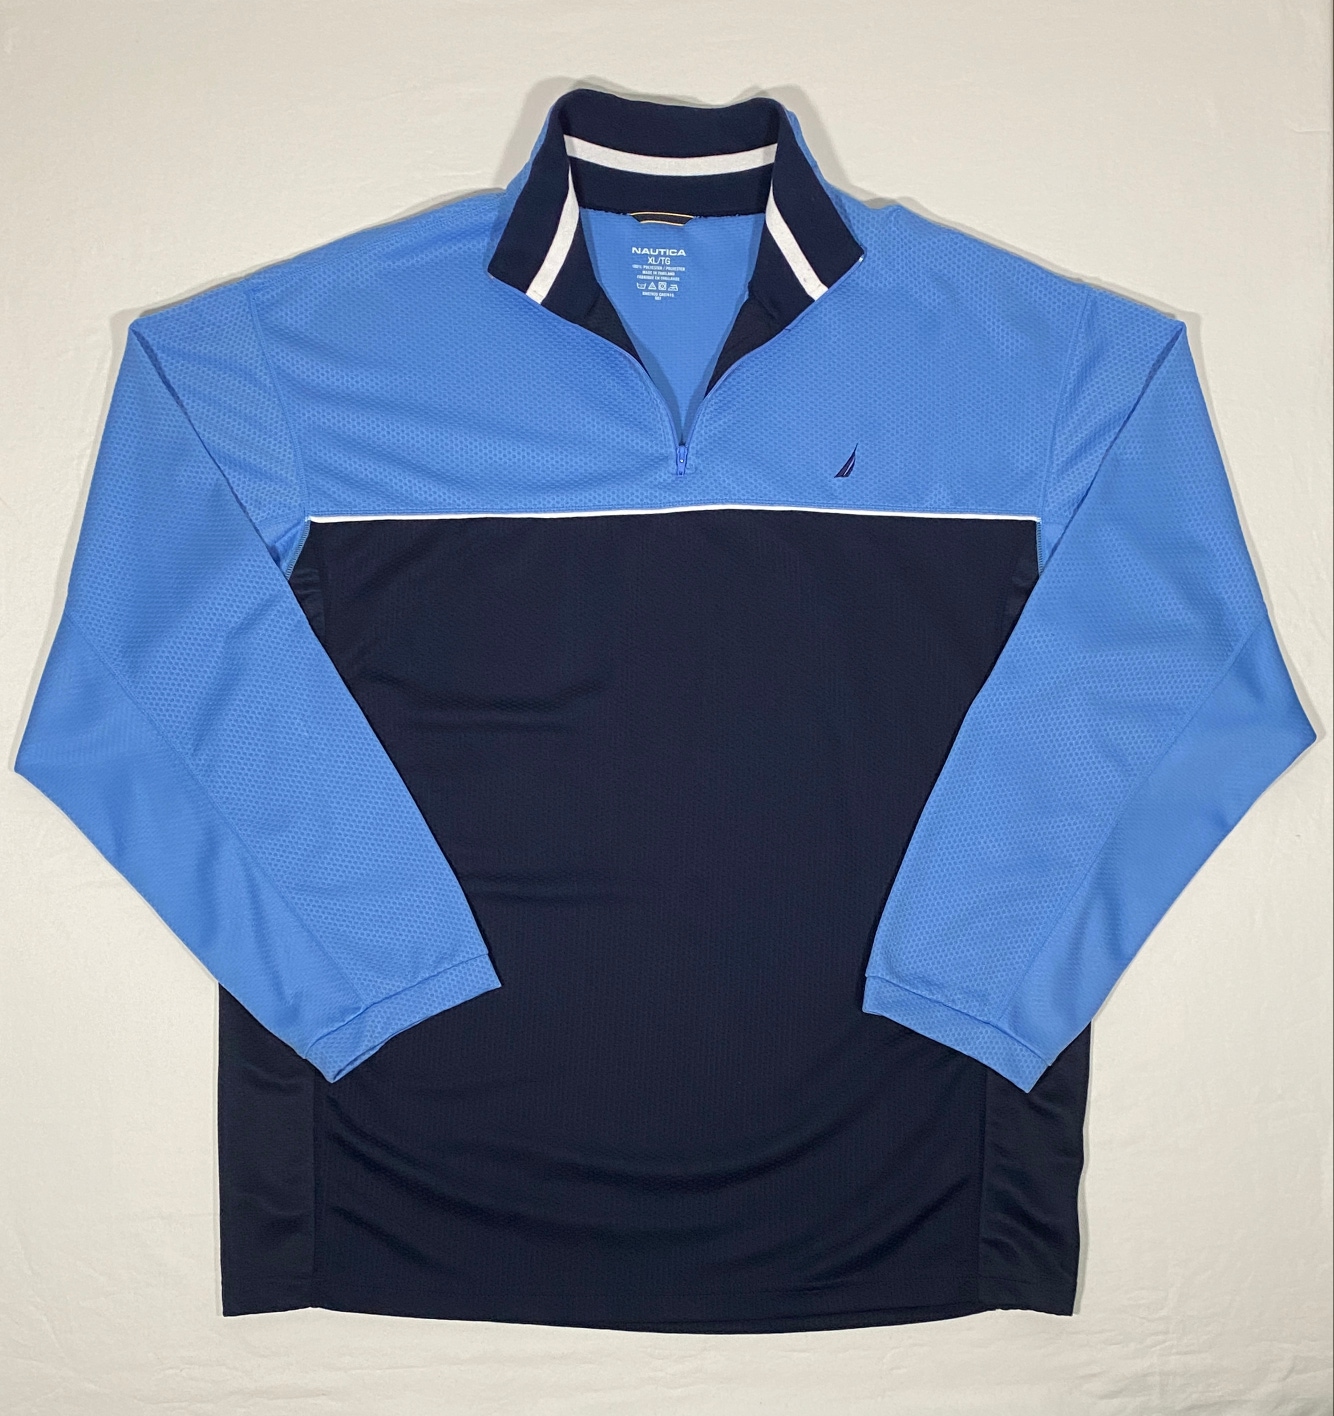 Nautica Men's Size XL 1/4 Zip Navy/Light Blue Fleece Mock Neck Golf Sweatshirt